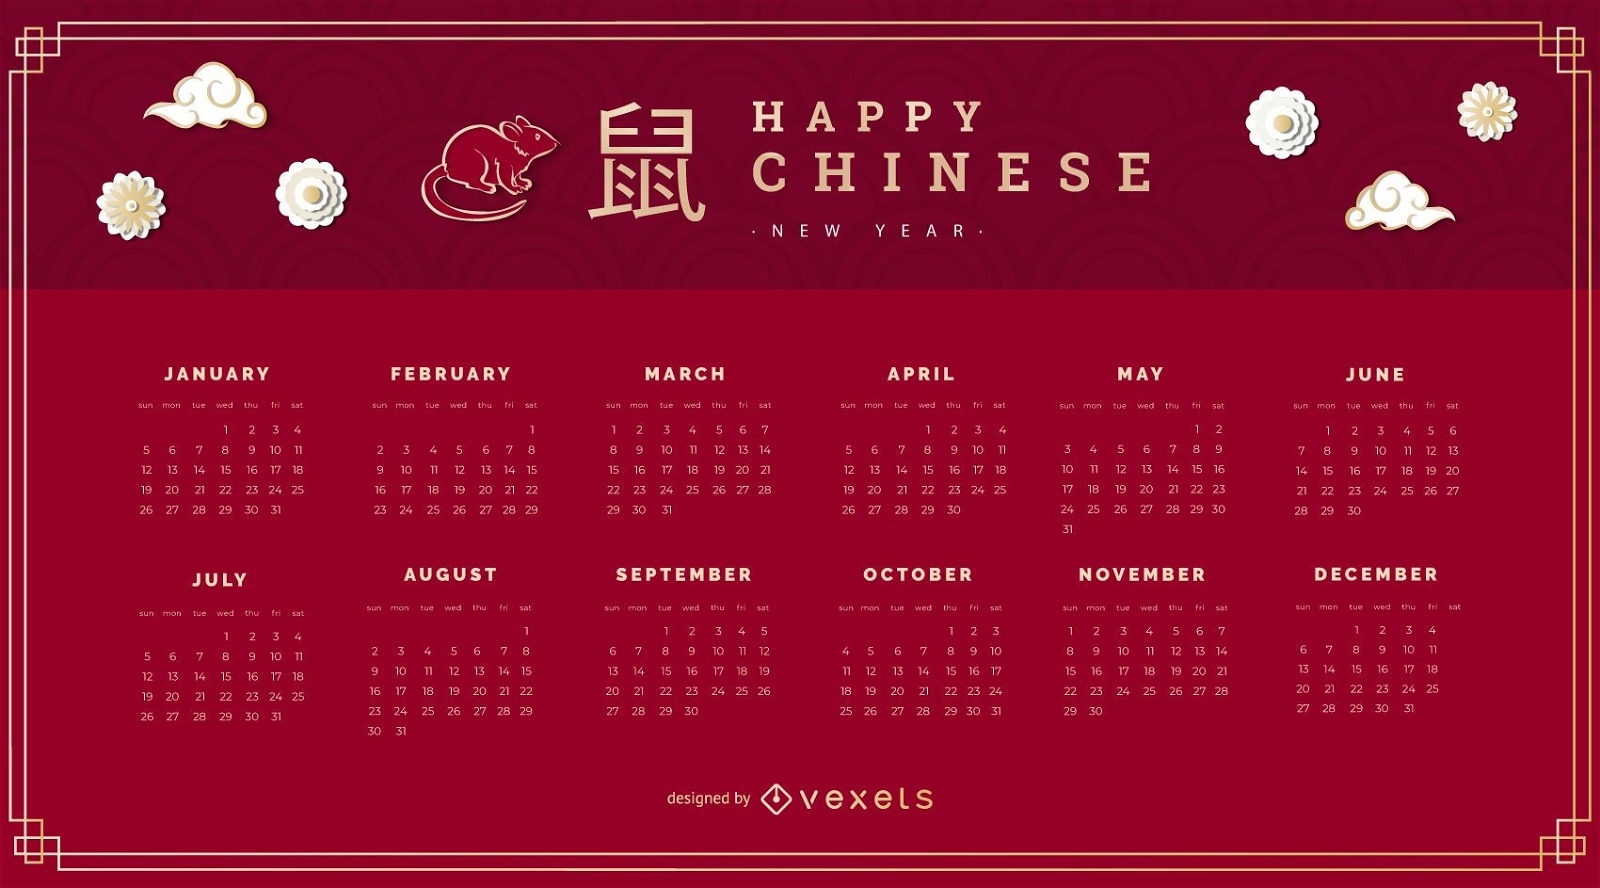 Chinesischer Neujahrskalender 2020